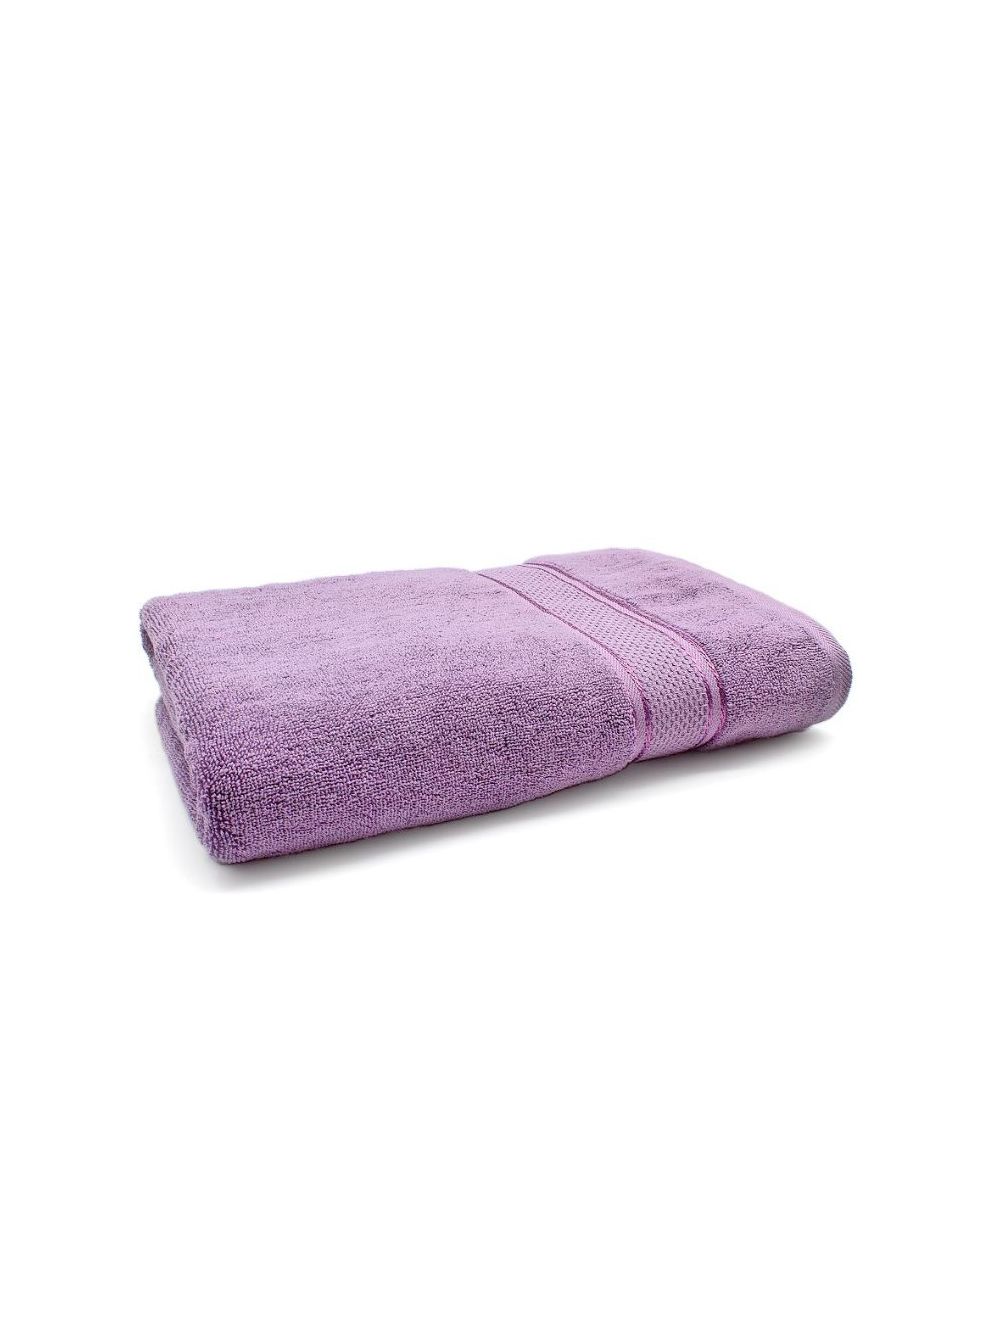 Rishahome 100% Cotton Bath Towel, Premium Collection, Violet -14RHFT054